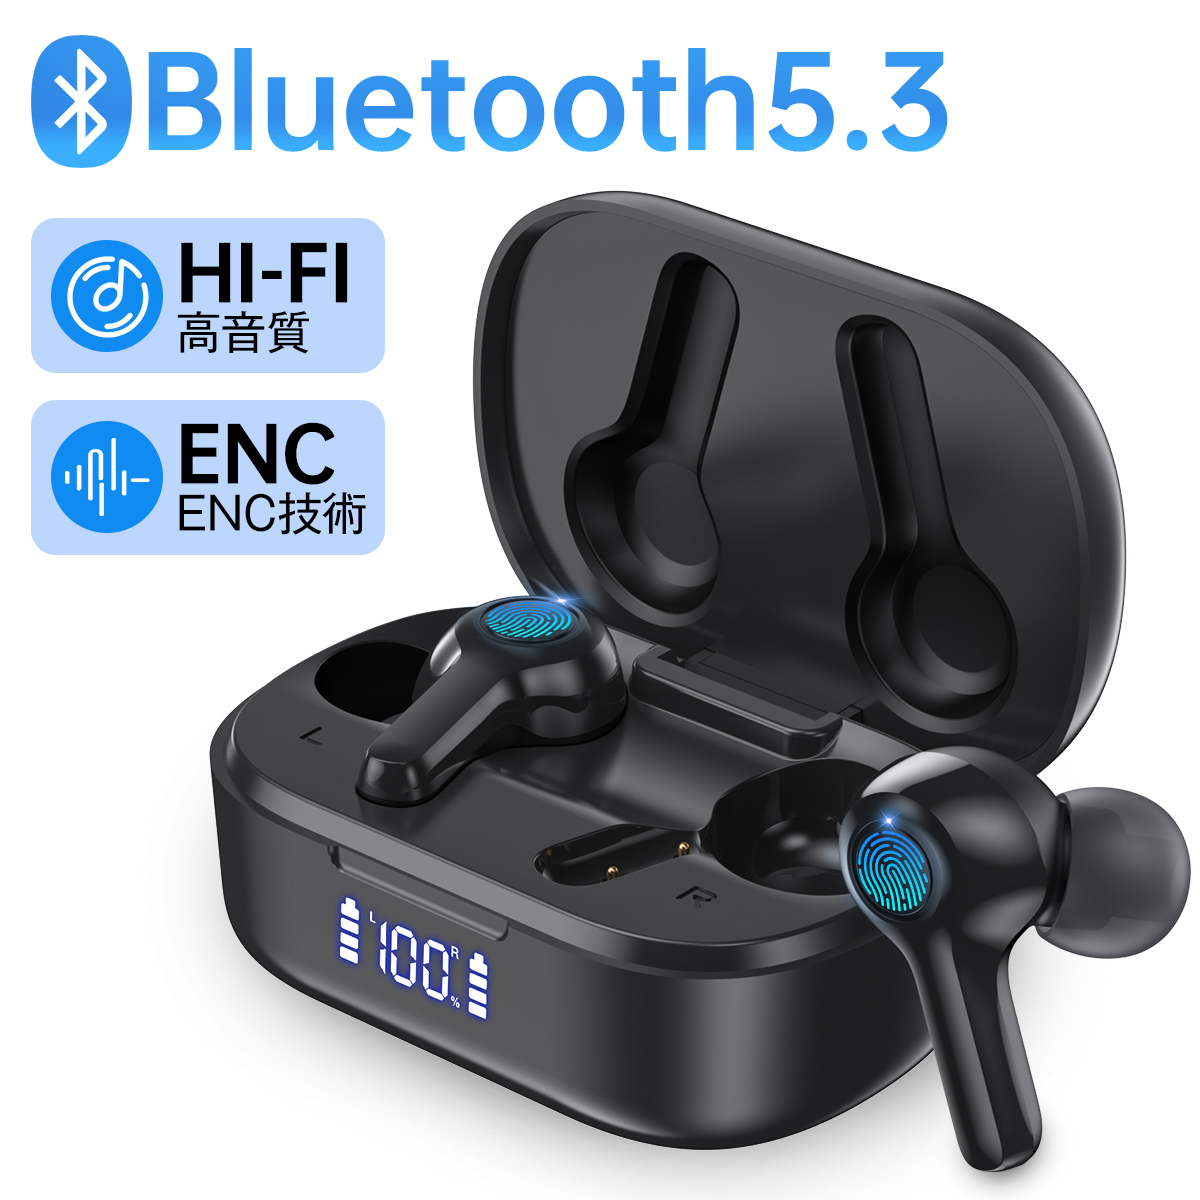 有名なブランド 期間限定P50倍還元 イヤホン ワイヤレスイヤホン bluetooth 5.3 Hi-Fi高音質 ENC電池残量表示 IPX7防水bluetooth  ワイヤレスイヤホンノイズキャンセリング高音質マイク付き40時間連続再生 片耳4.0ｇイヤホン小型iphone androidipadpc用 